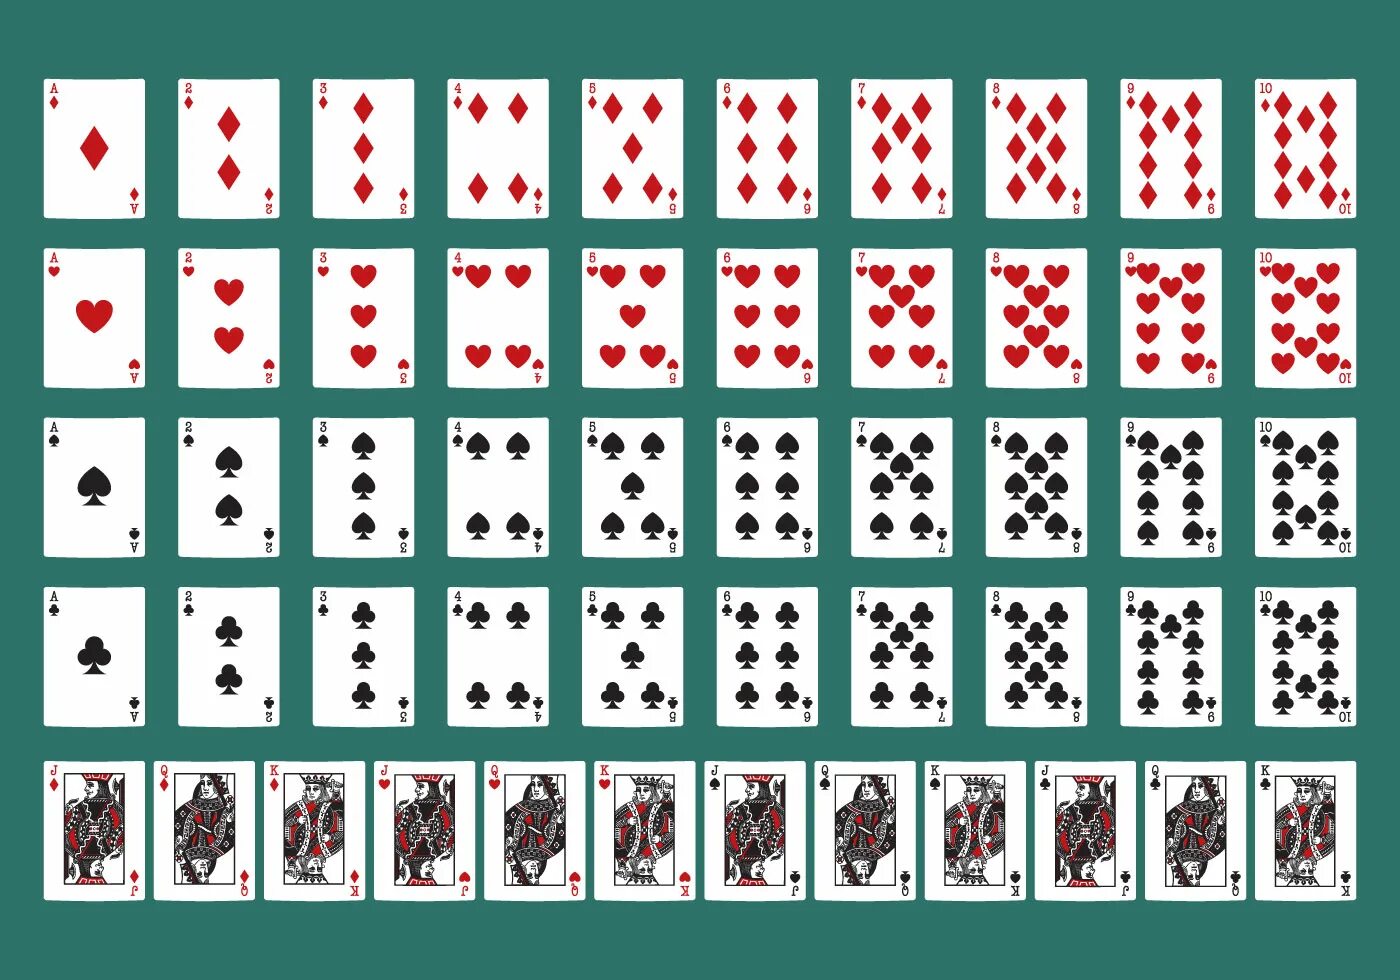 Трехкарточный Покер комбинации. Колода в 52 карты в холдеме. Дурак 24 карты колода. Маленькие игральные карты.